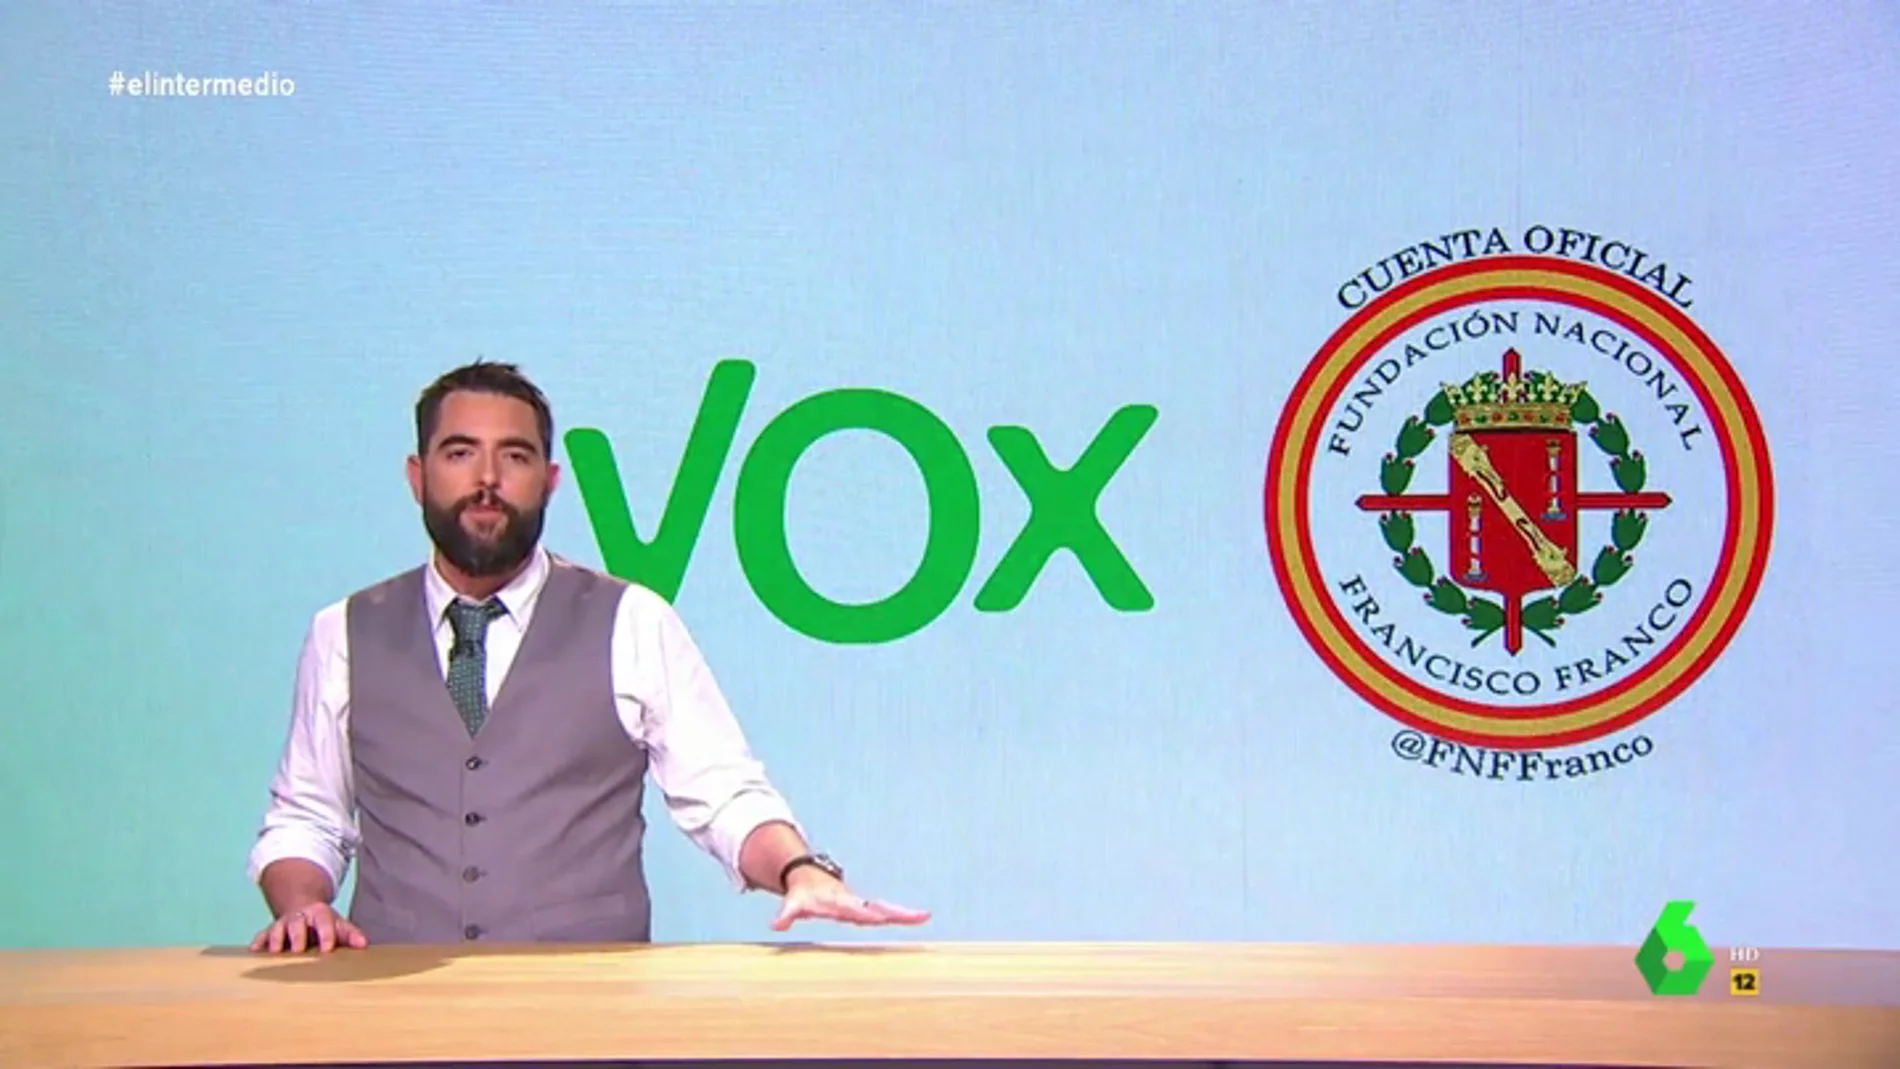 Dani Mateo explica todos los vínculos entre Vox y la Fundación Francisco Franco: "Son tan de derechas que más que primos son primos de Rivera"